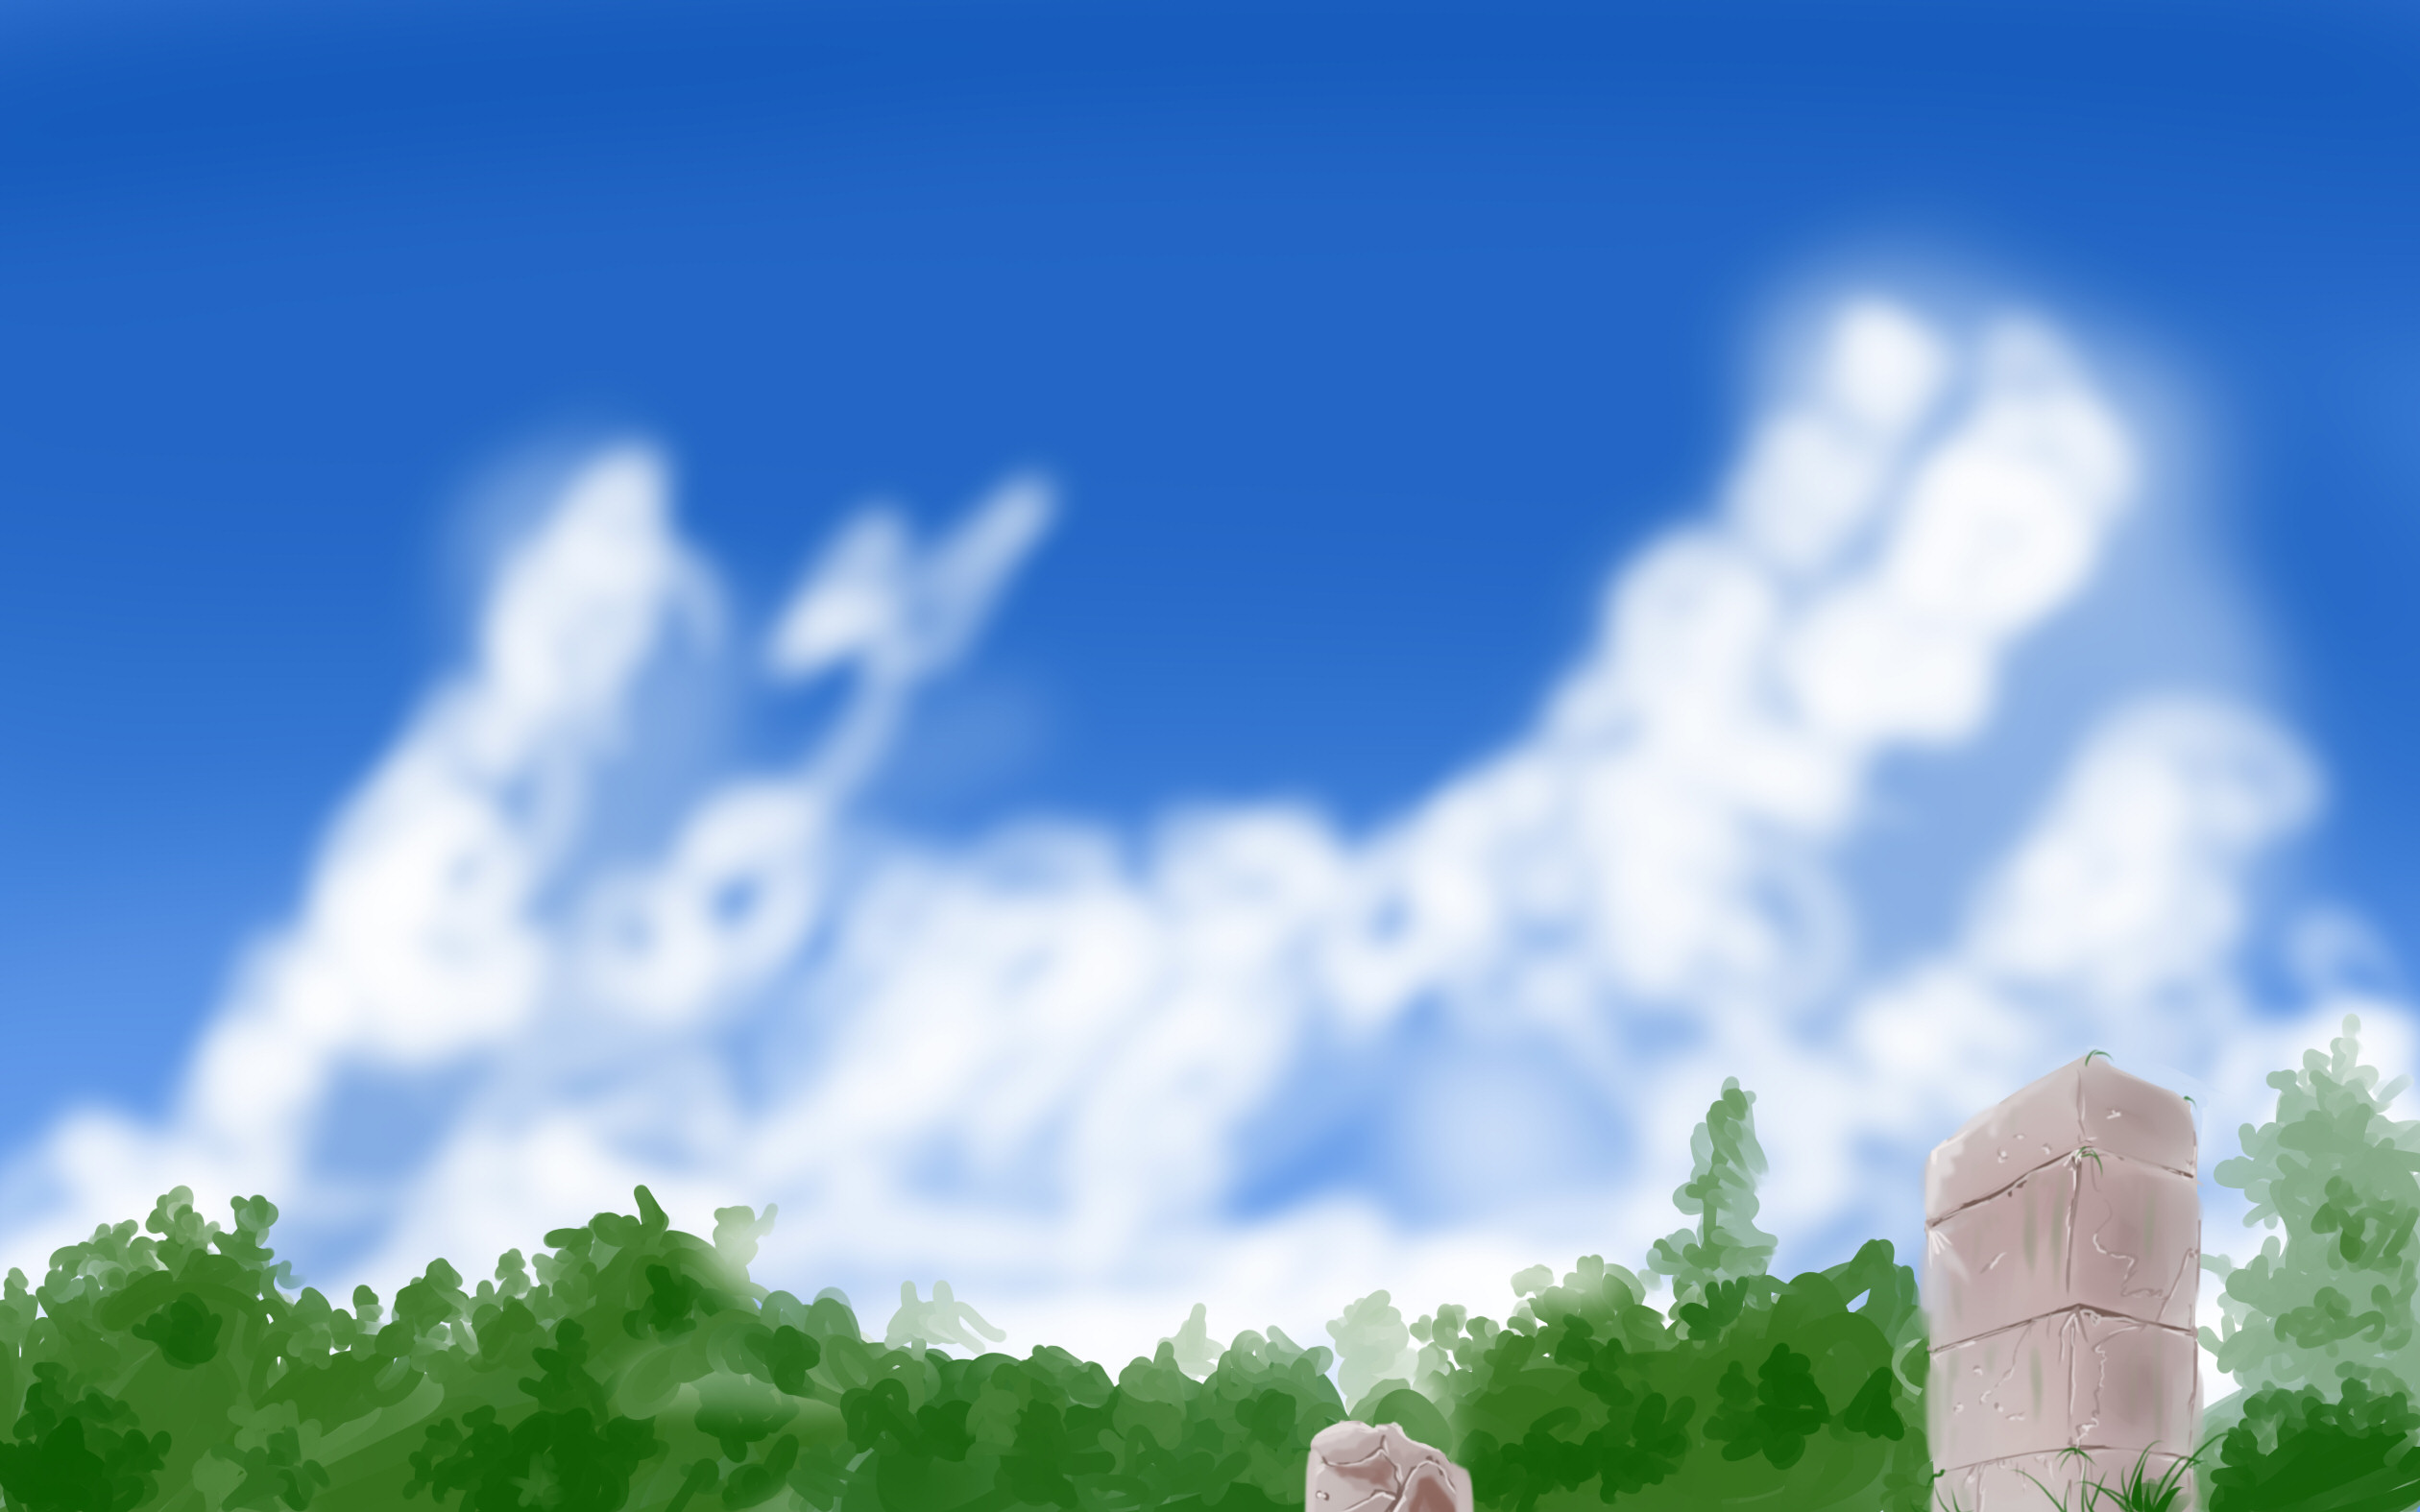 Anime Style Garden Background by wbd on DeviantArt